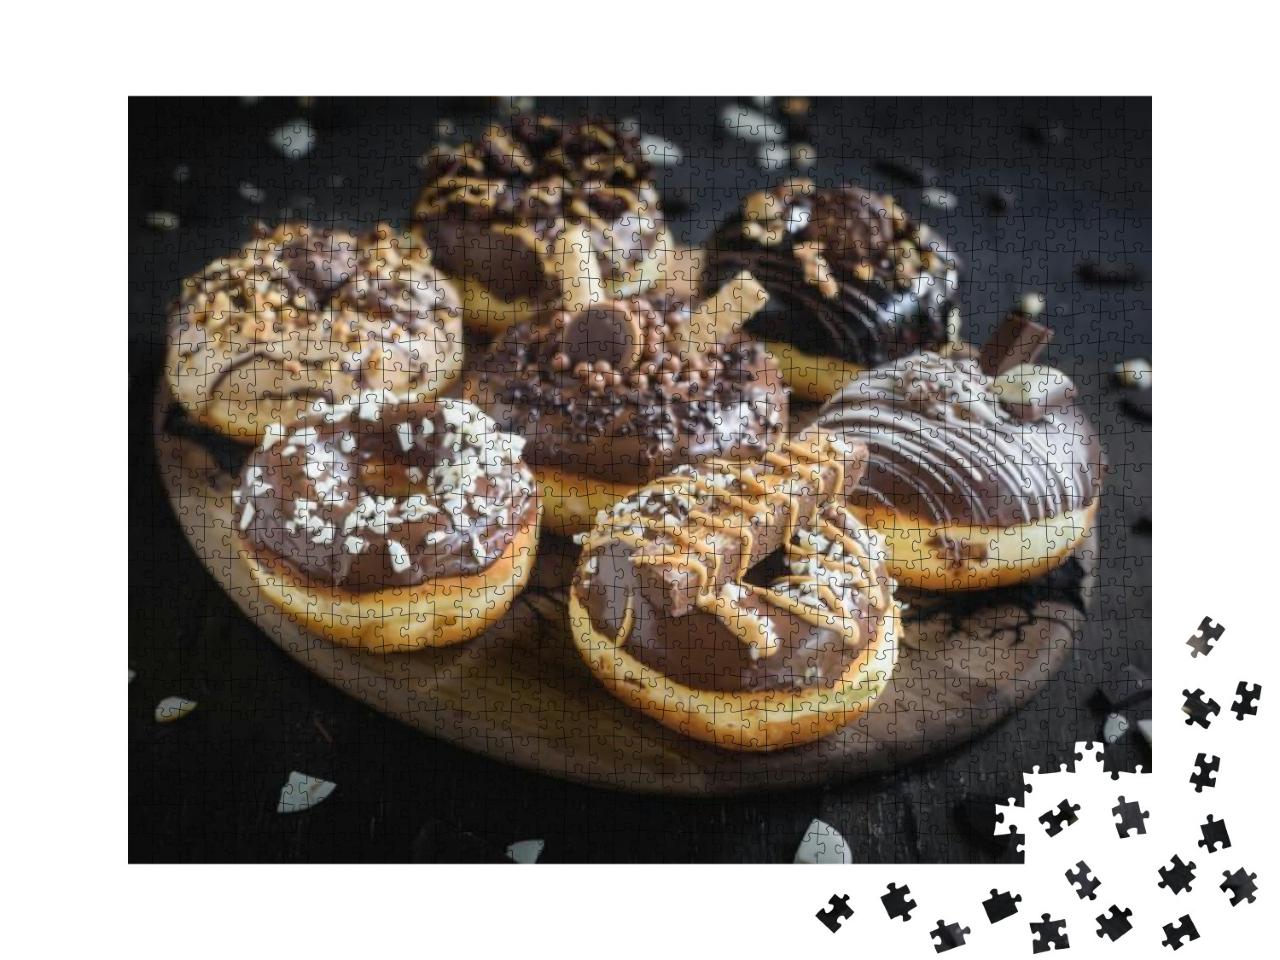 Puzzle 1000 Teile „Verschiedene hausgemachte Schokoladendonuts“